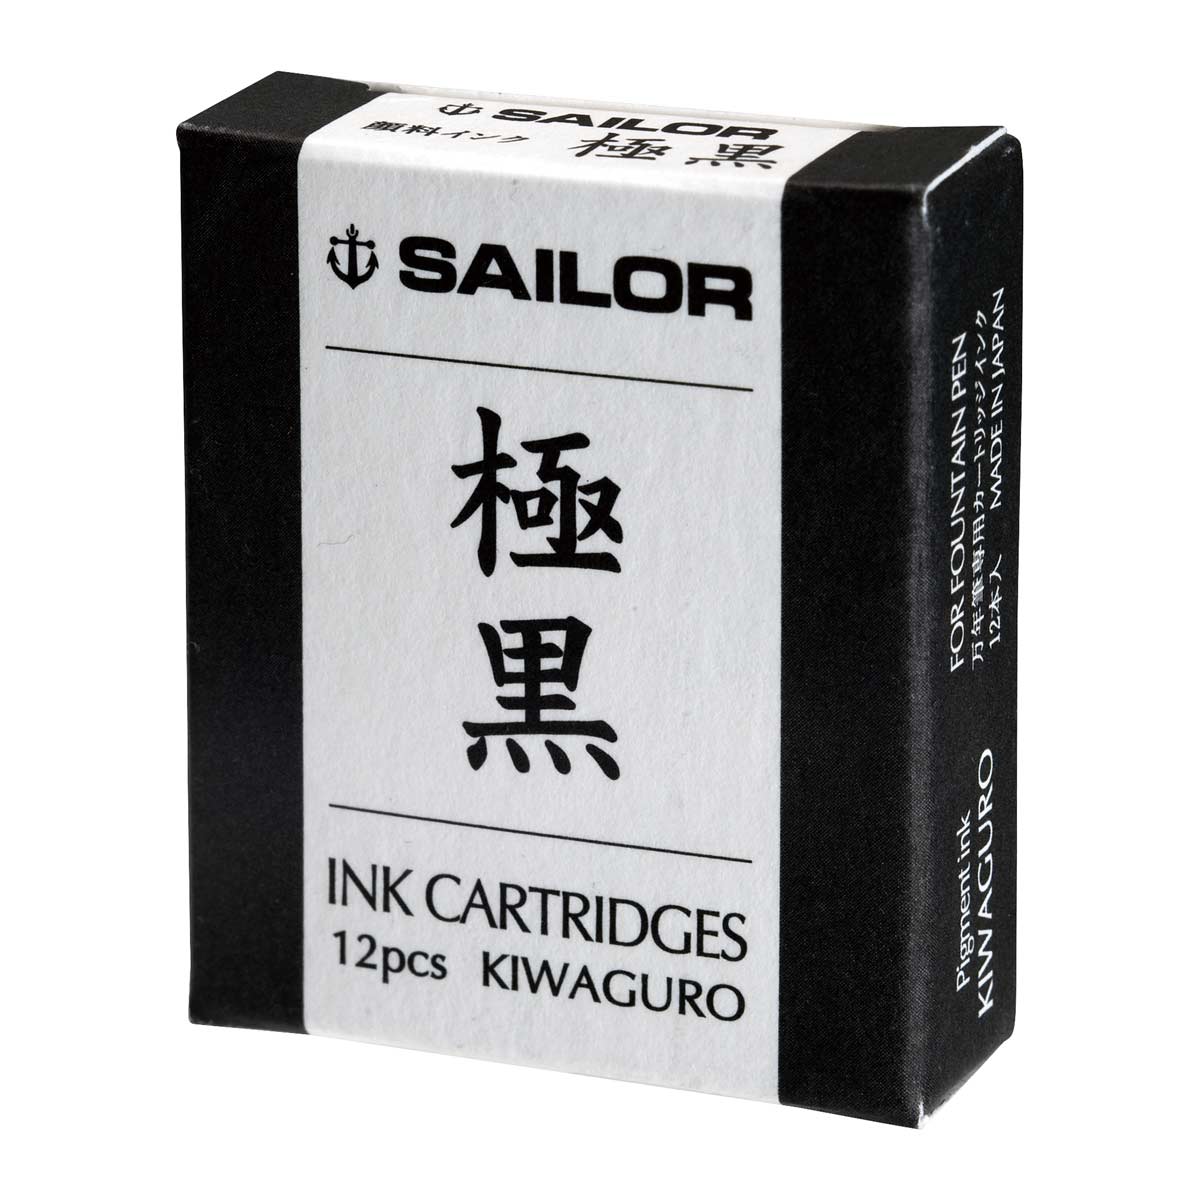 Sailor Patronen - Kiwaguro, 12 Stück